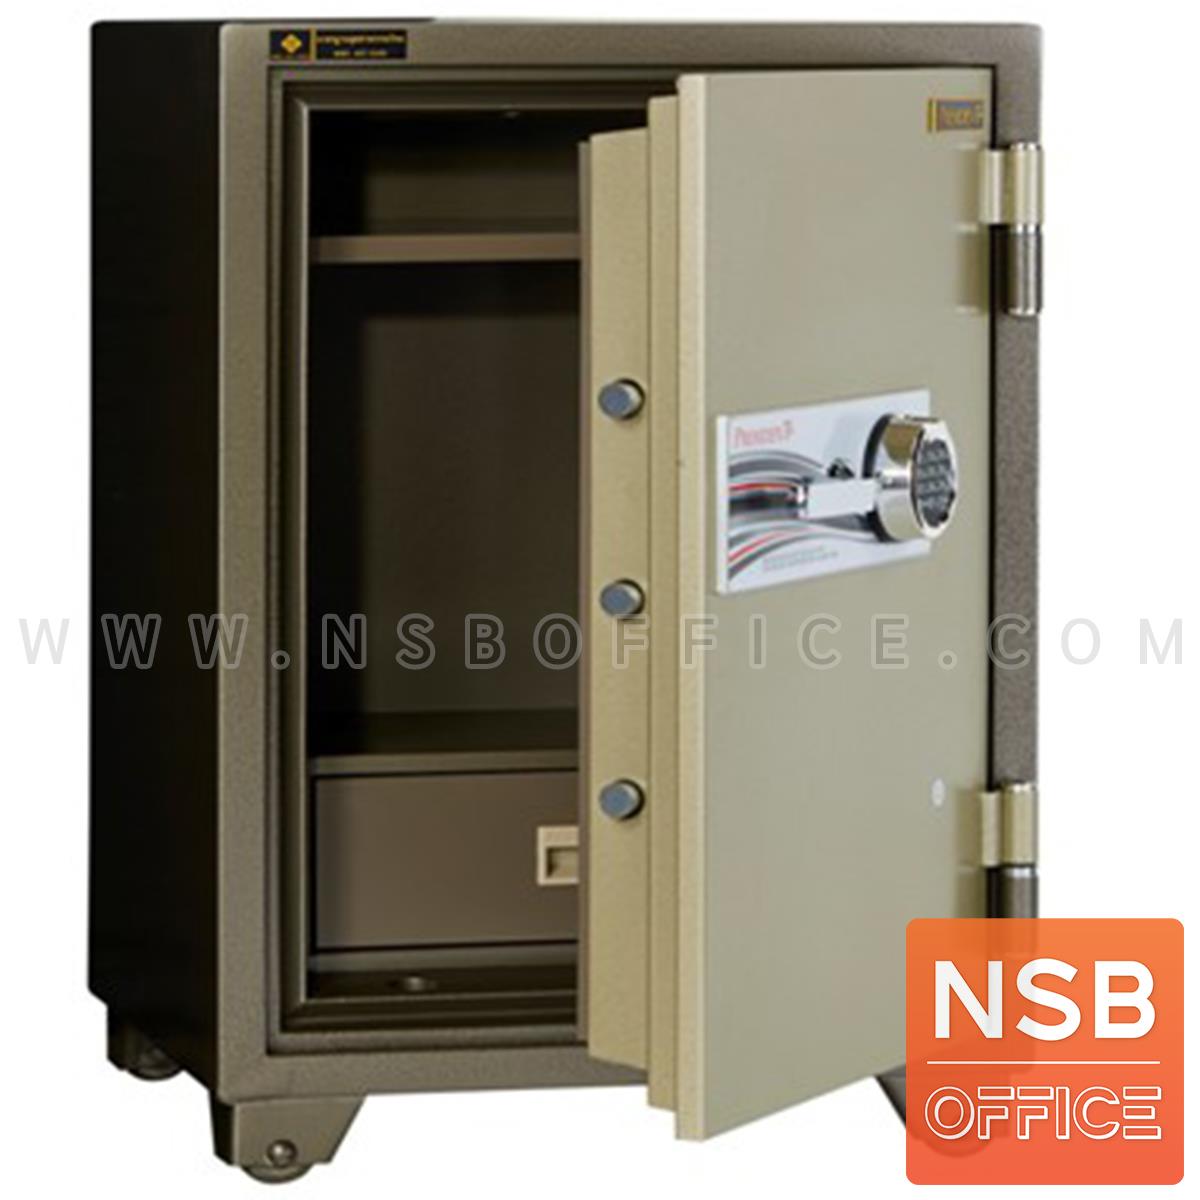 ตู้เซฟนิรภัยดิจิตอลระบบสแกนนิ้วมือ 155 กก.  รุ่น PRESIDENT-SB30DF 1 กุญแจ 1 รหัส 